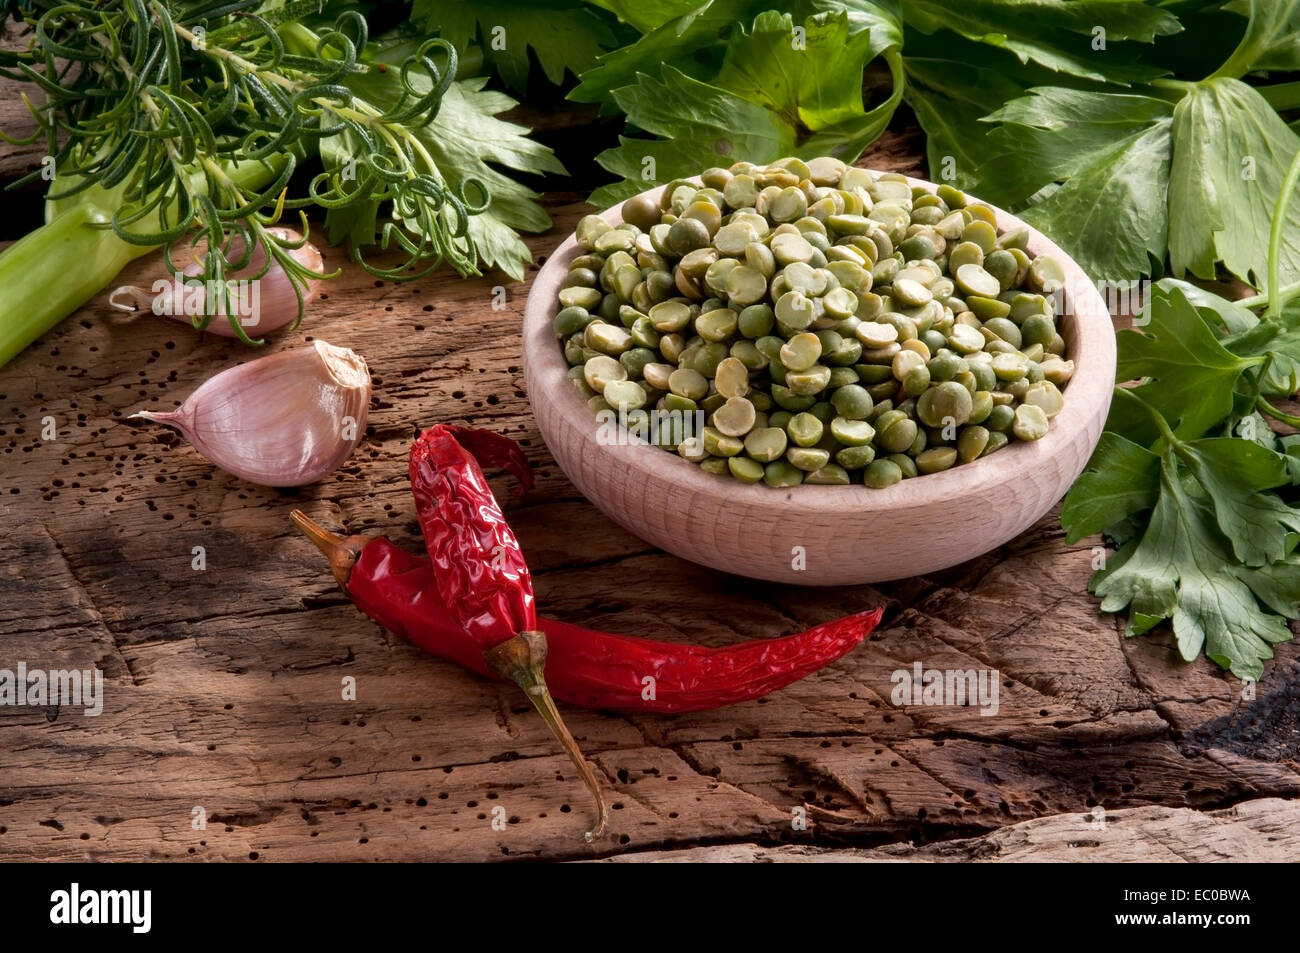 Gemüse in einem Korb, bereit für eine Suppe. Reihe von Aromen zum Würzen Stockfoto